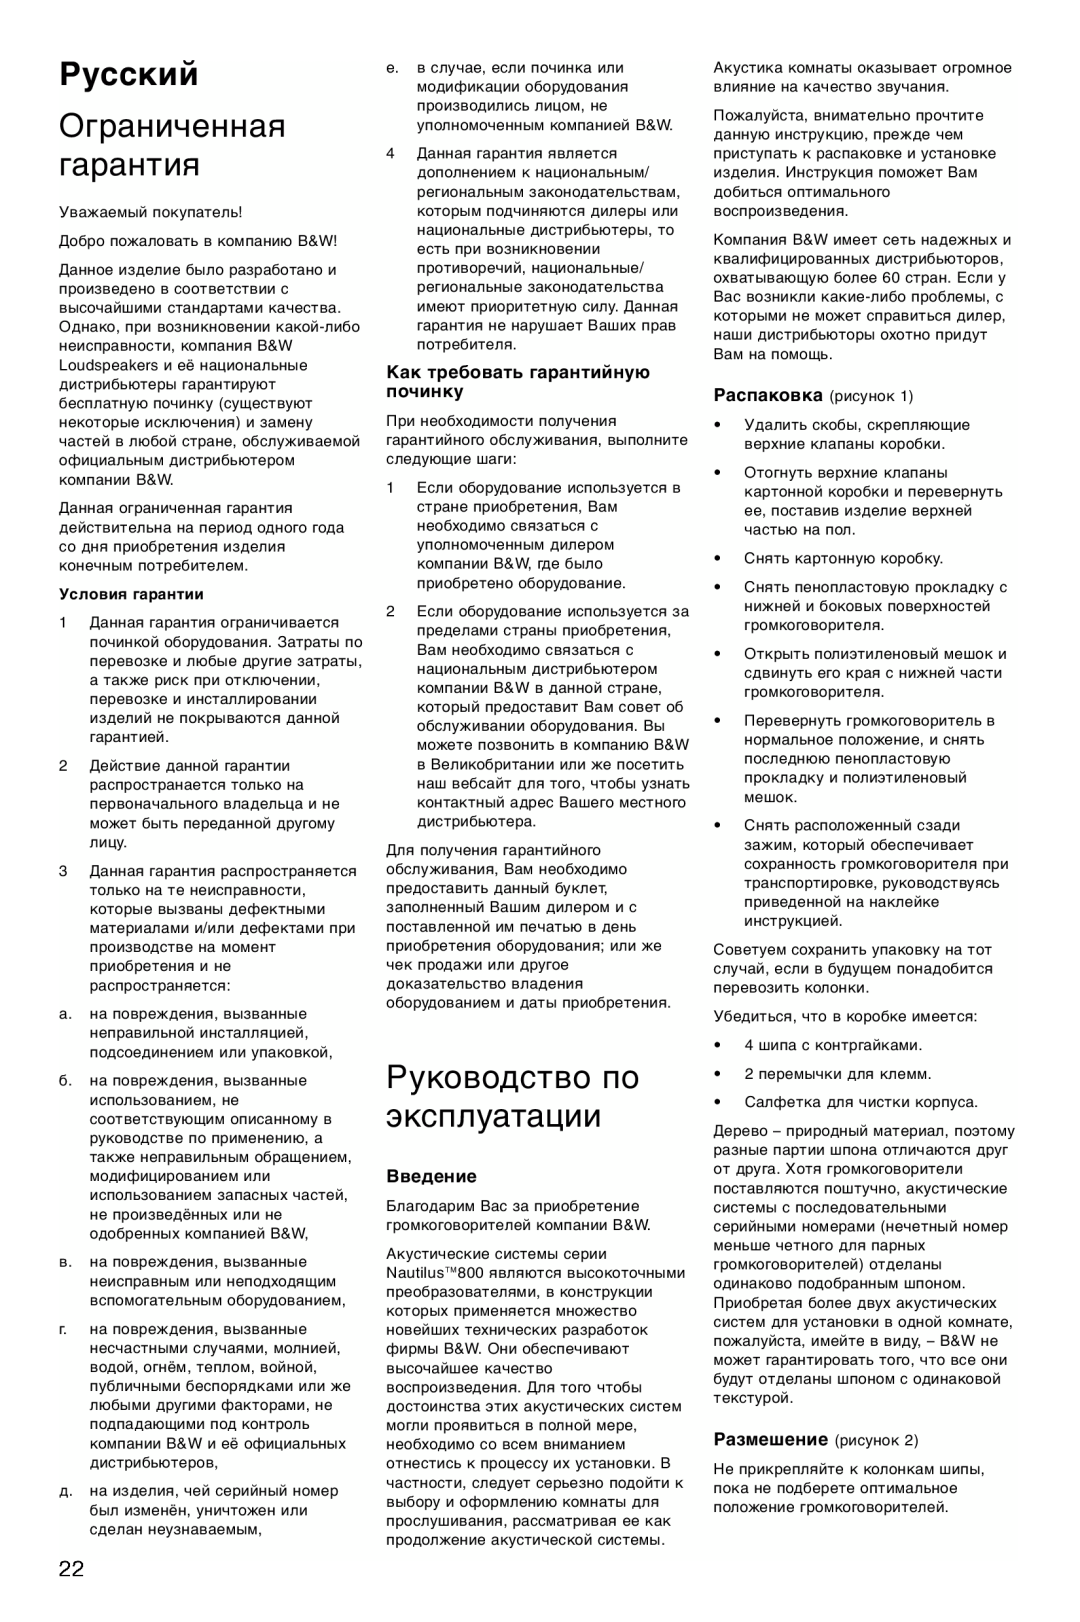 Bowers & Wilkins 803, 804 Русский, Ограниченная гарантия, Руководство по эксплуатации, Как требовать гарантийную починку 